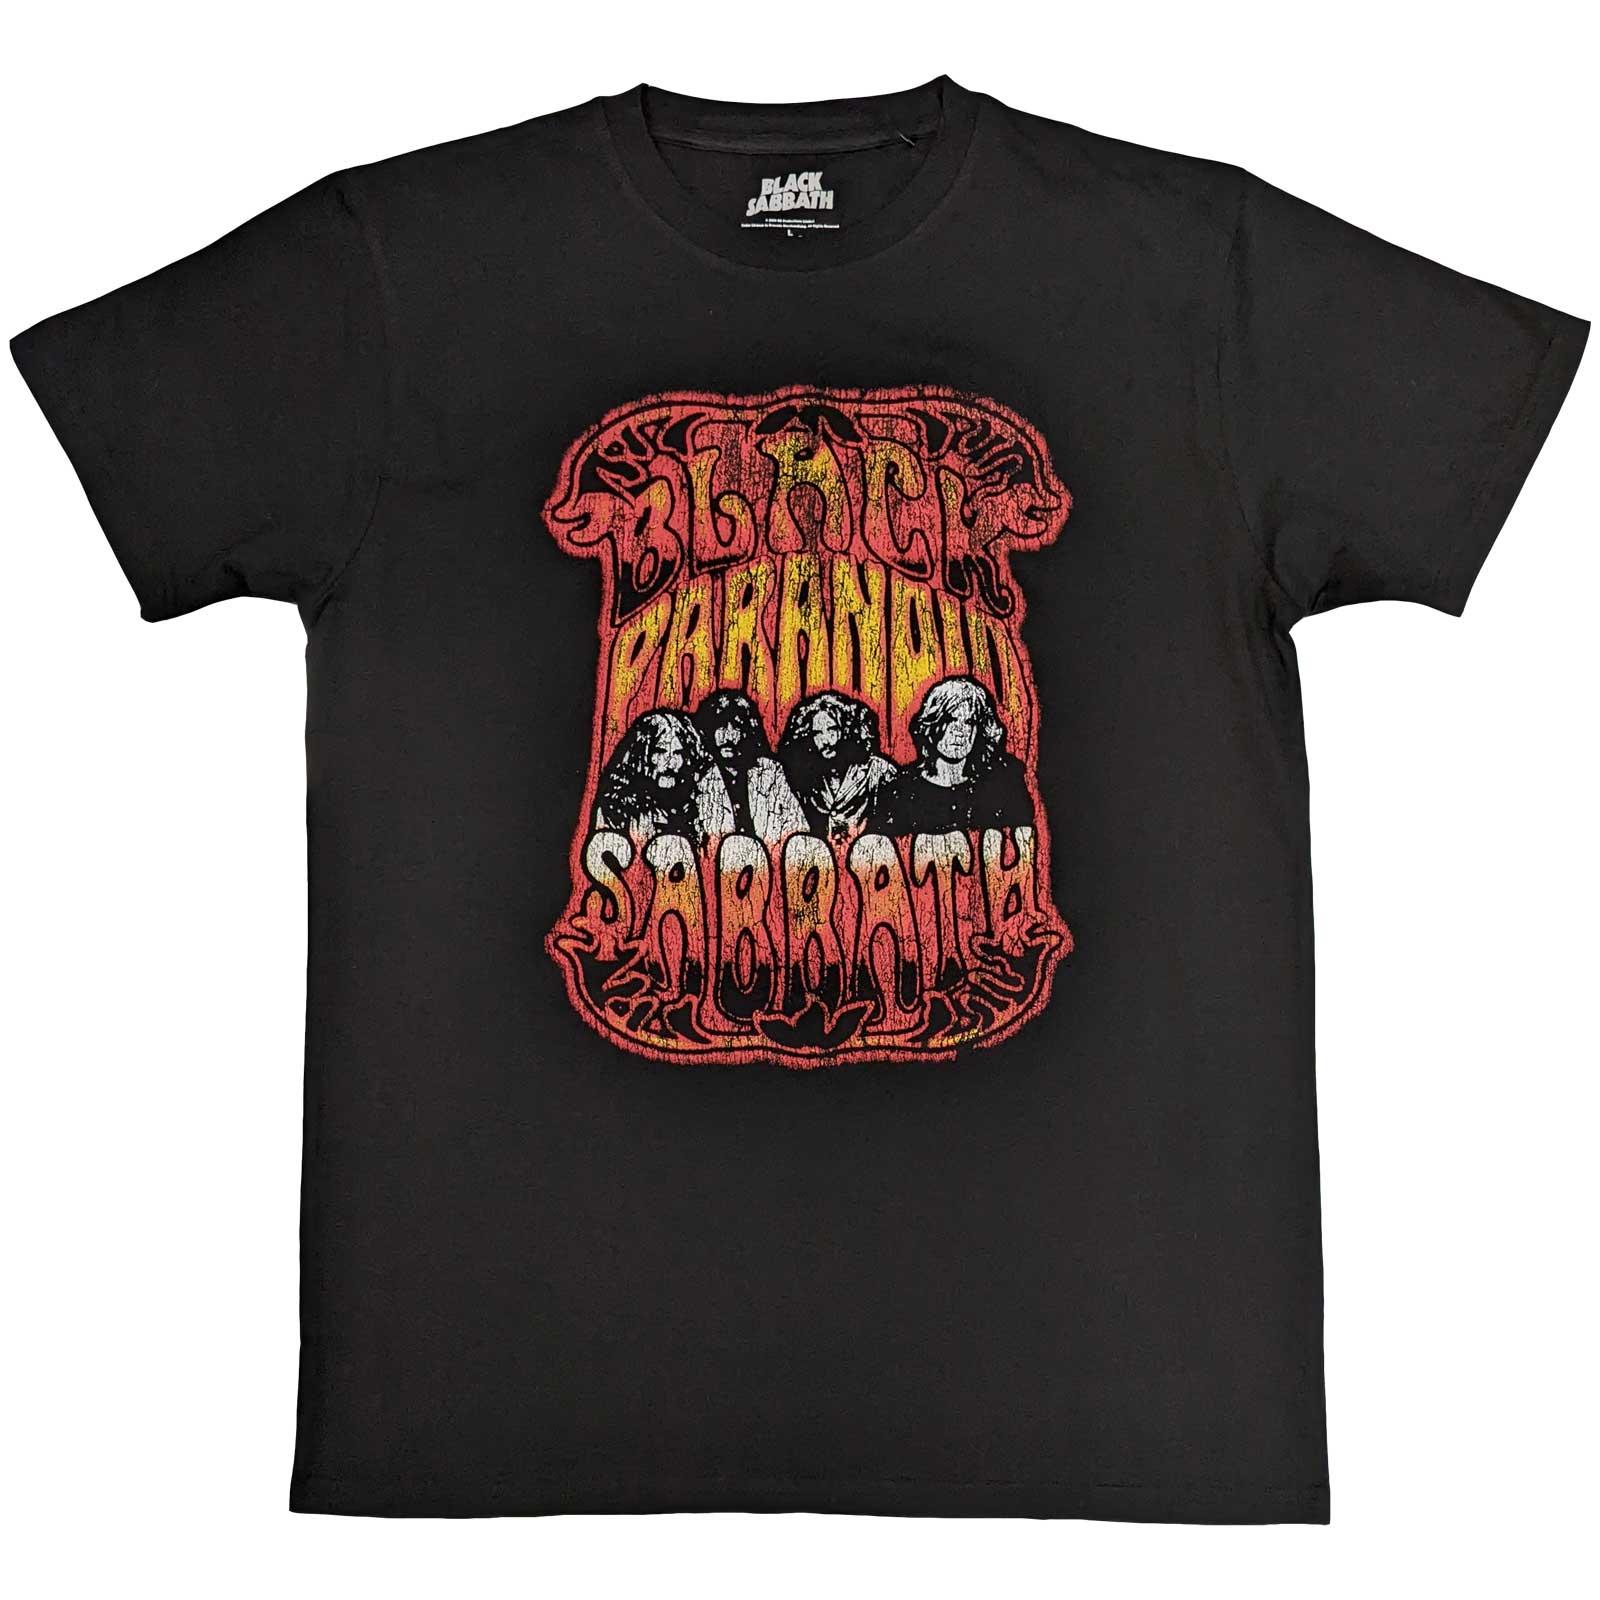 パラノイド (ブラック・サバス) Black Sabbath オフィシャル商品 ユニセックス Paranoid Pysch Tシャツ コットン 半袖 トップス 【海外通販】